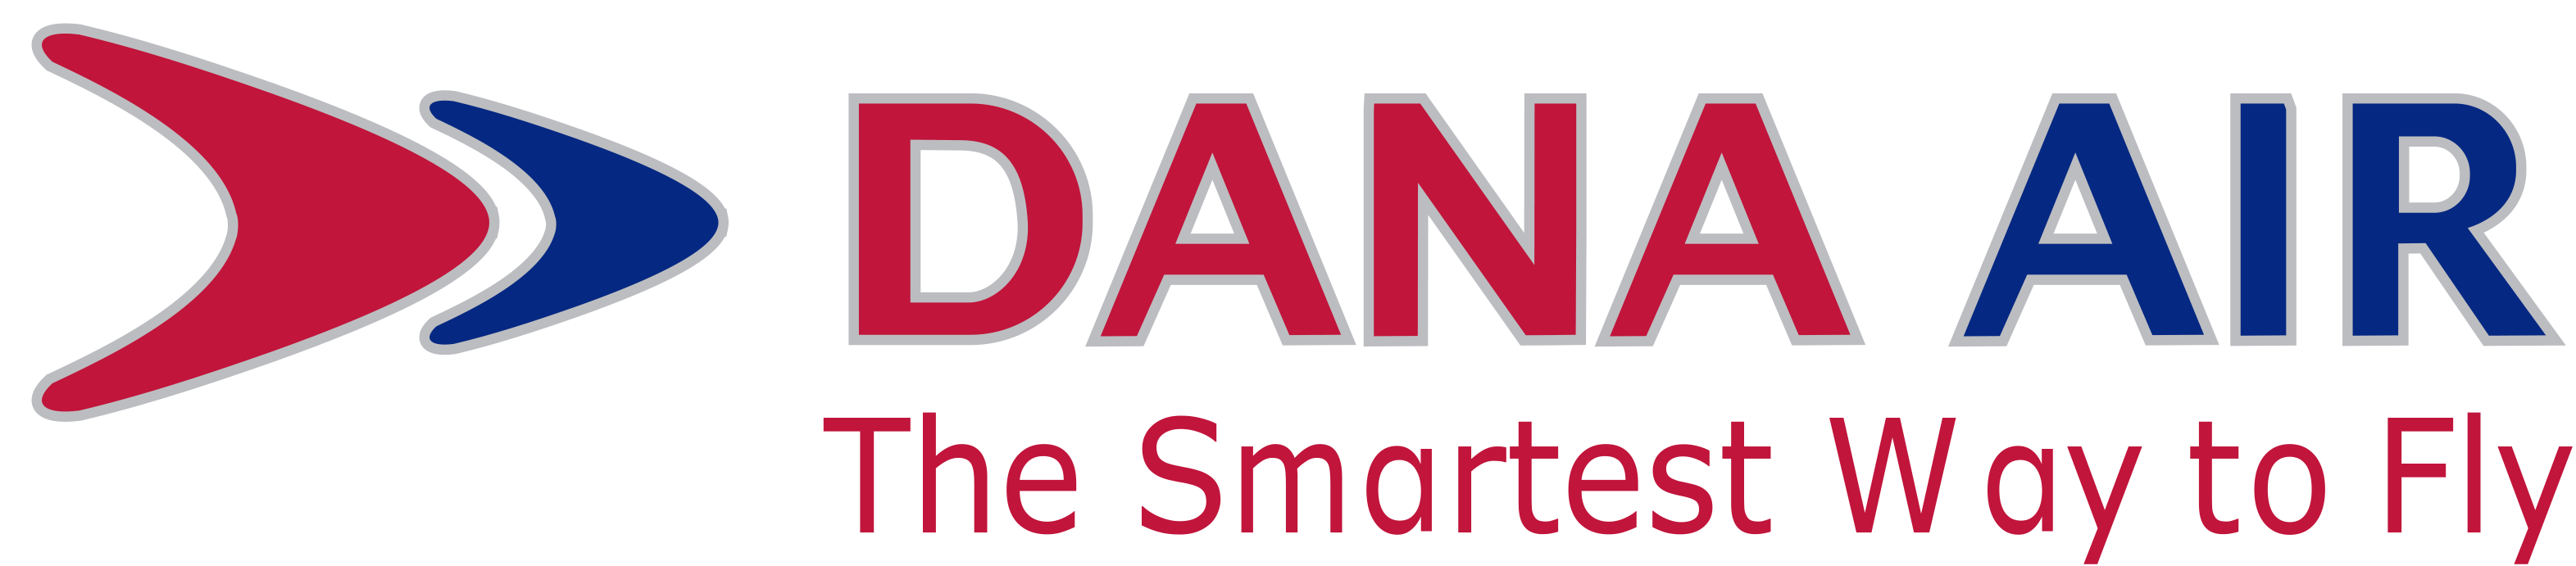 dana-air-logo.png